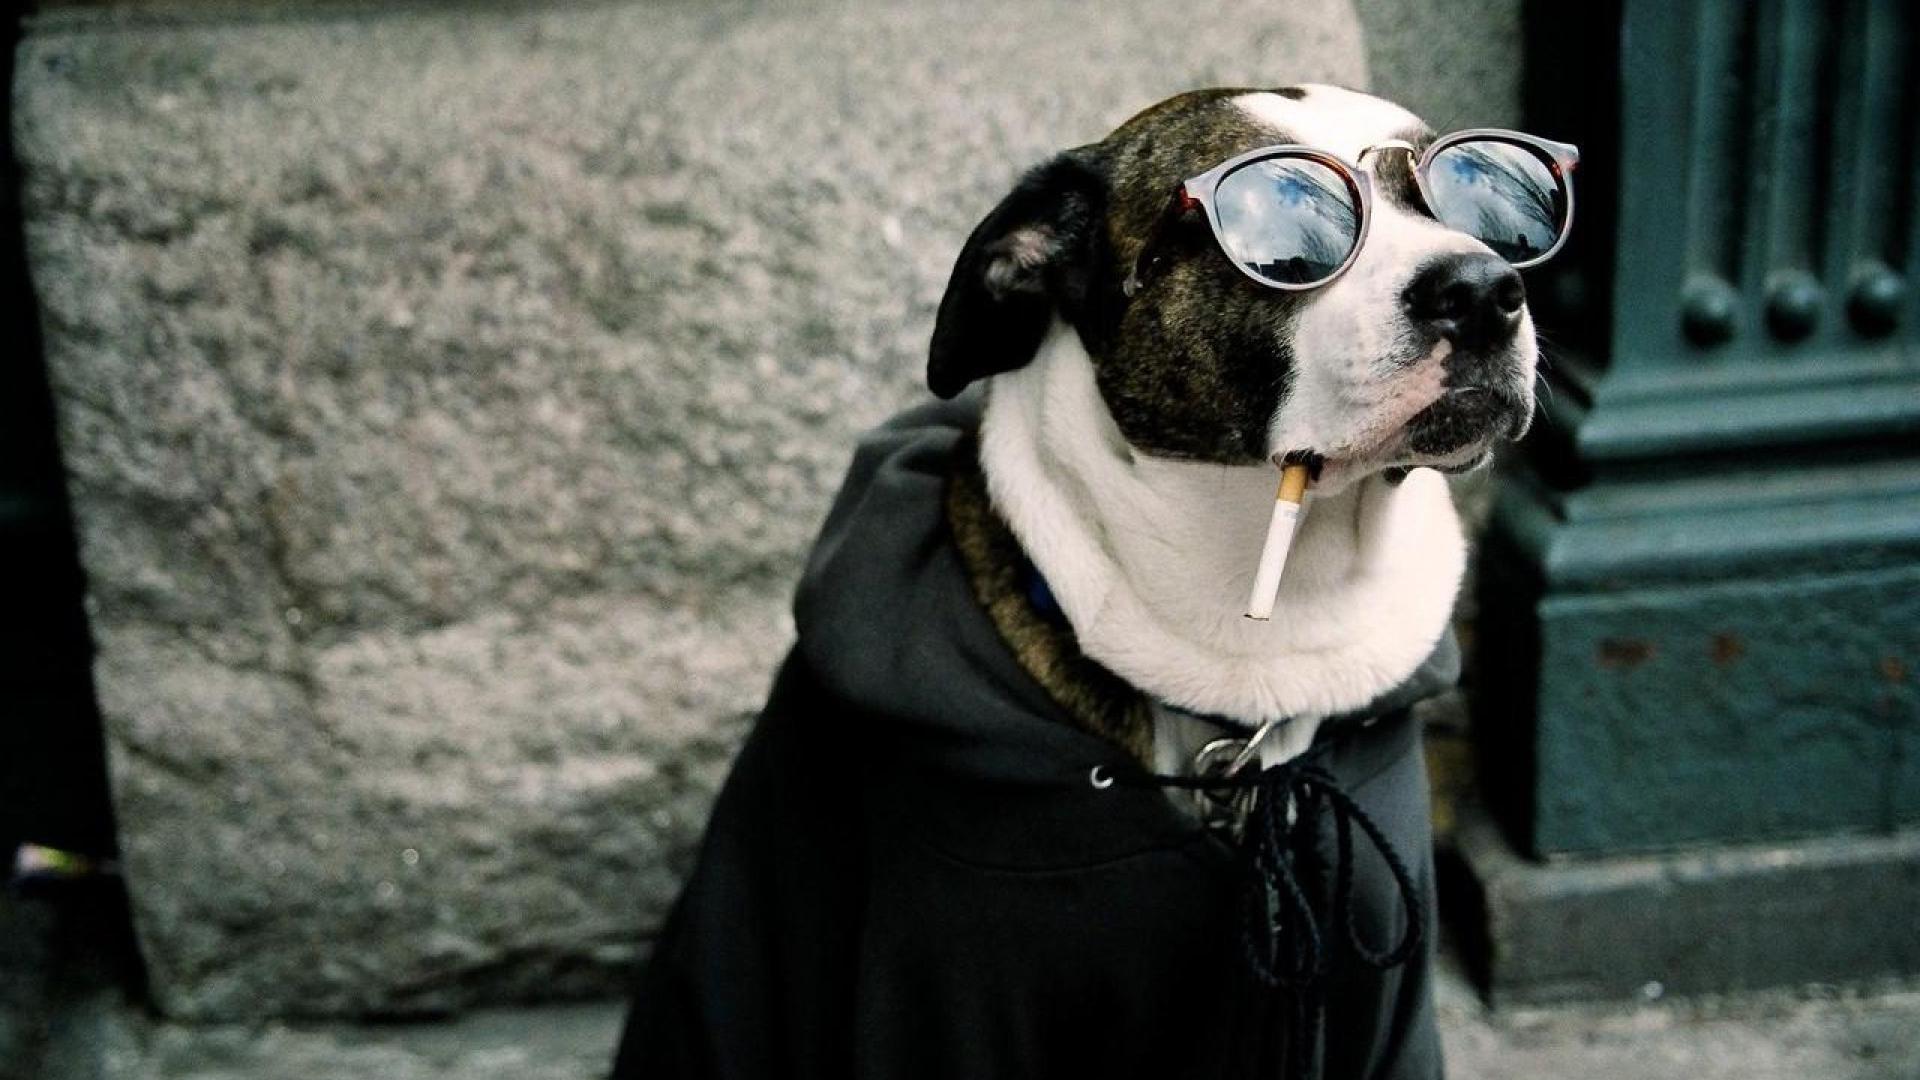 لاکچری ترین تصویر زمینه سگ با عینک آفتابی و سیگار